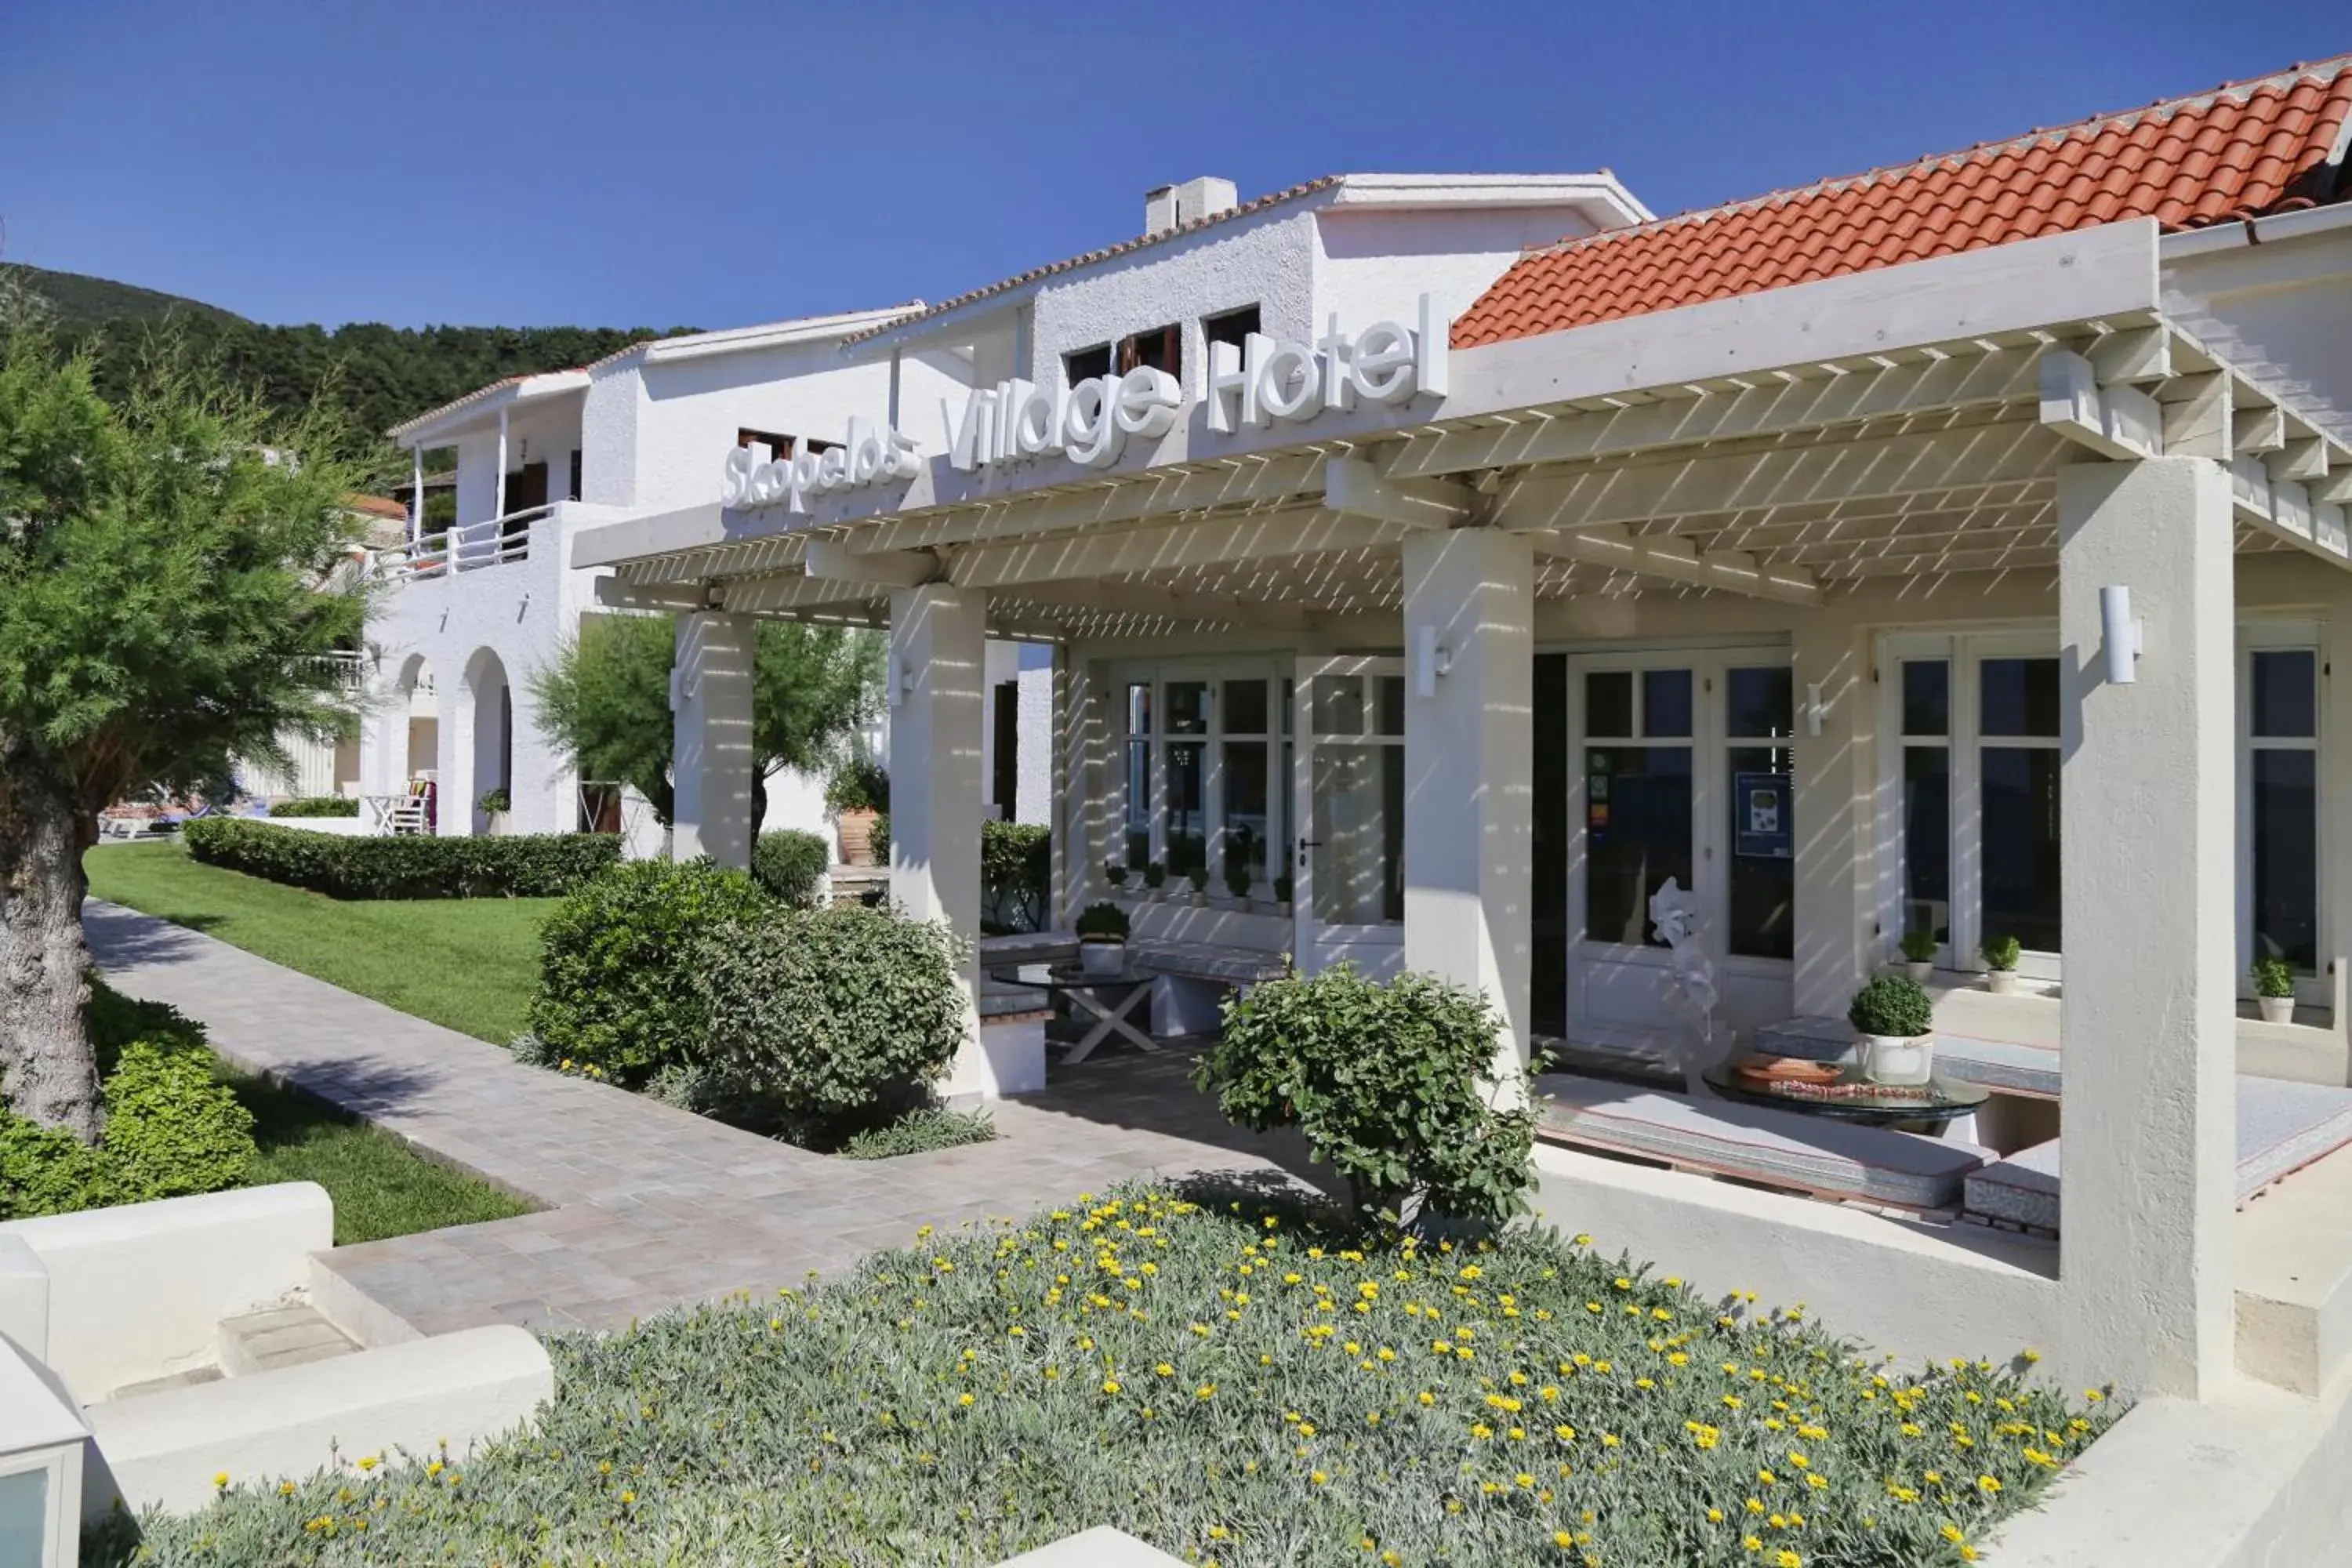 Property Building in Skopelos Village Hotel